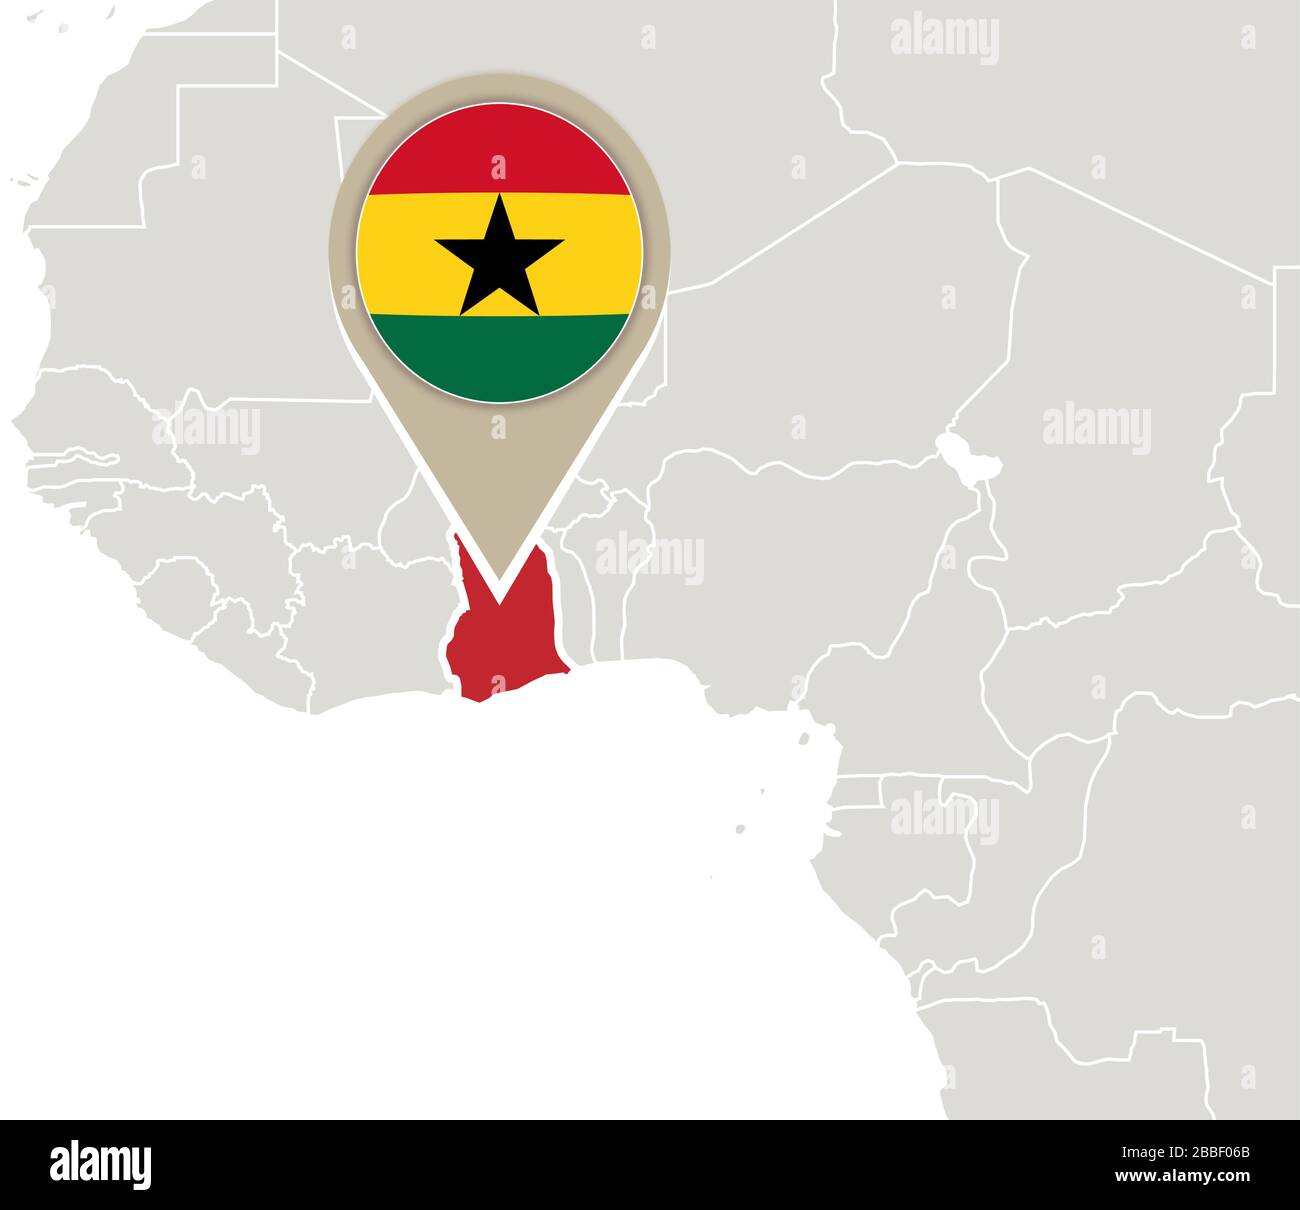 Afrique avec la carte et le drapeau du Ghana mis en évidence Illustration de Vecteur